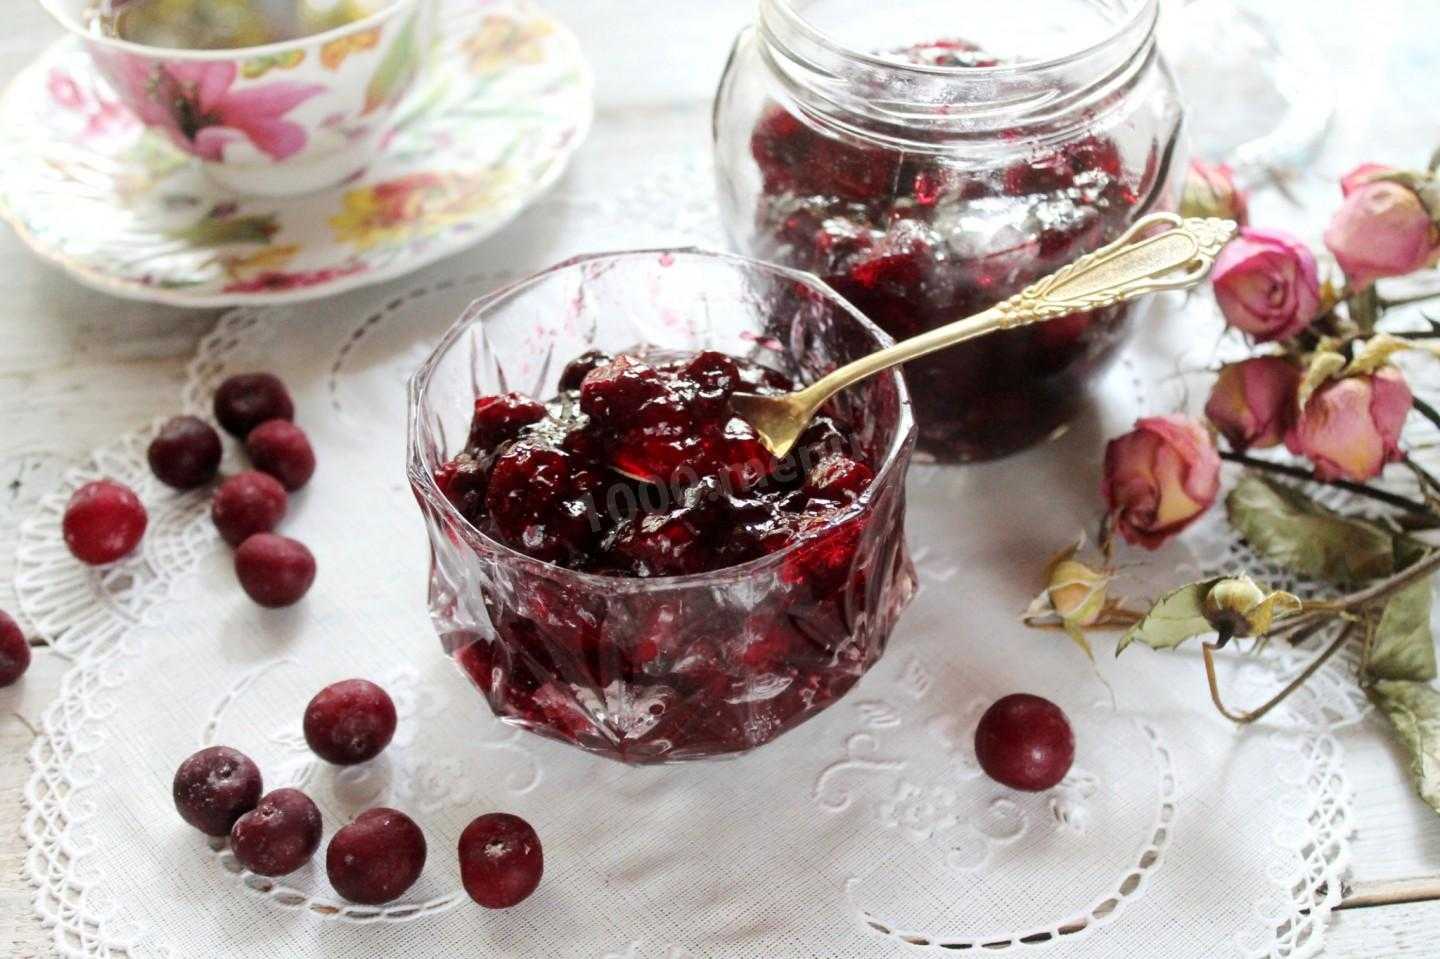 Варенье из вишни с косточками — простые рецепты вишневого варенья на зиму